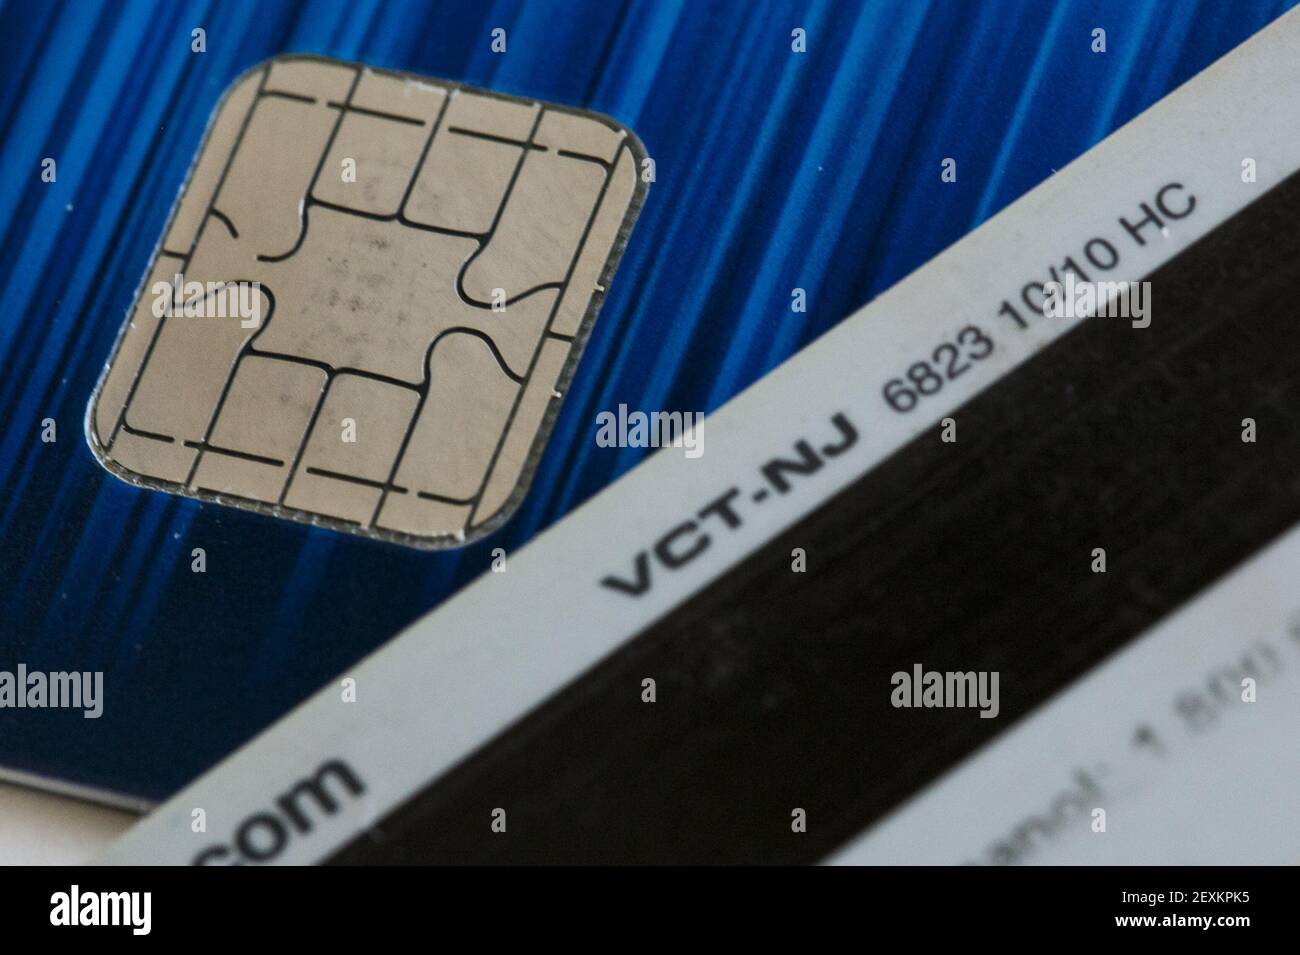 Foto organizzate di una carta di credito Visa con chip EMV, conosciuta  anche come 'chip and PIN', in contrasto con carte di credito a banda  magnetica il 14 febbraio 2014 a Washington,